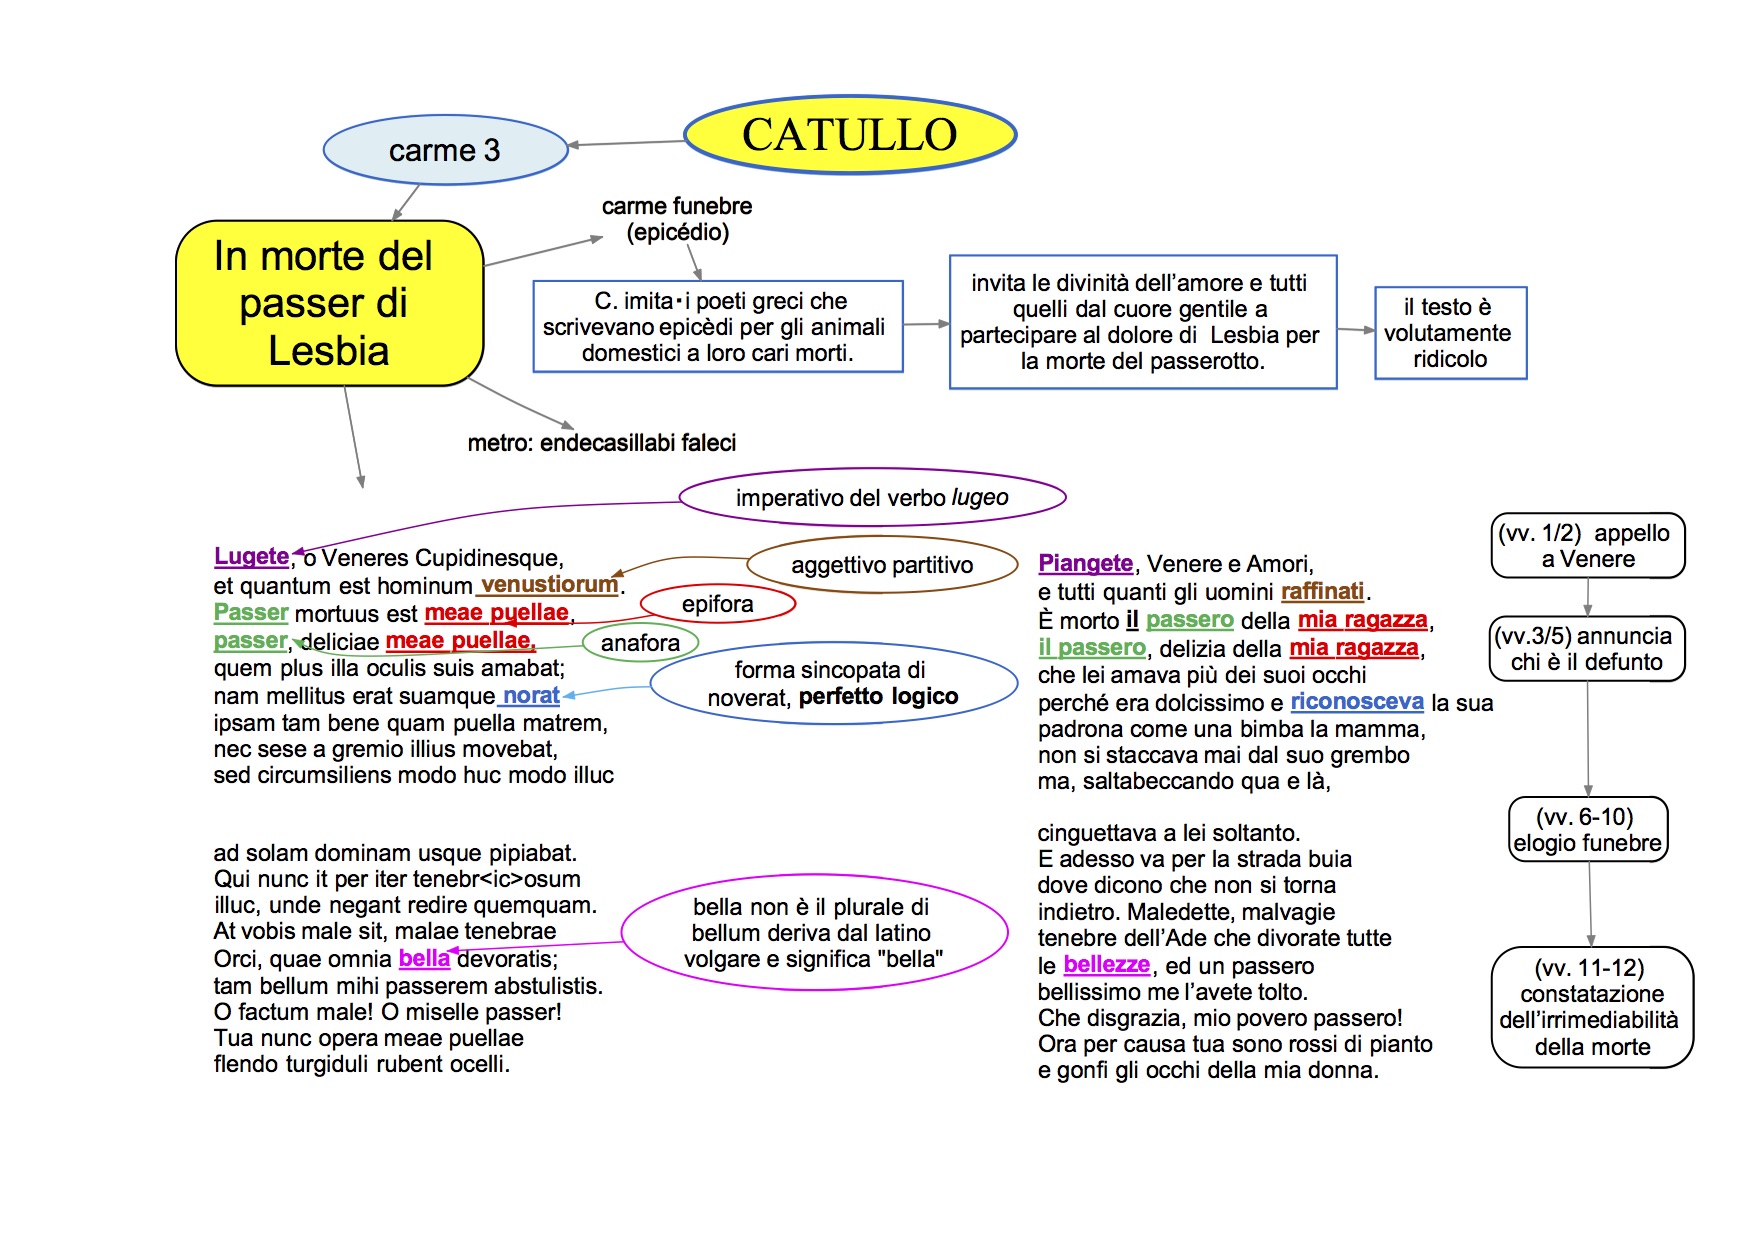 mappa concettuale Latino Catullo carme 3